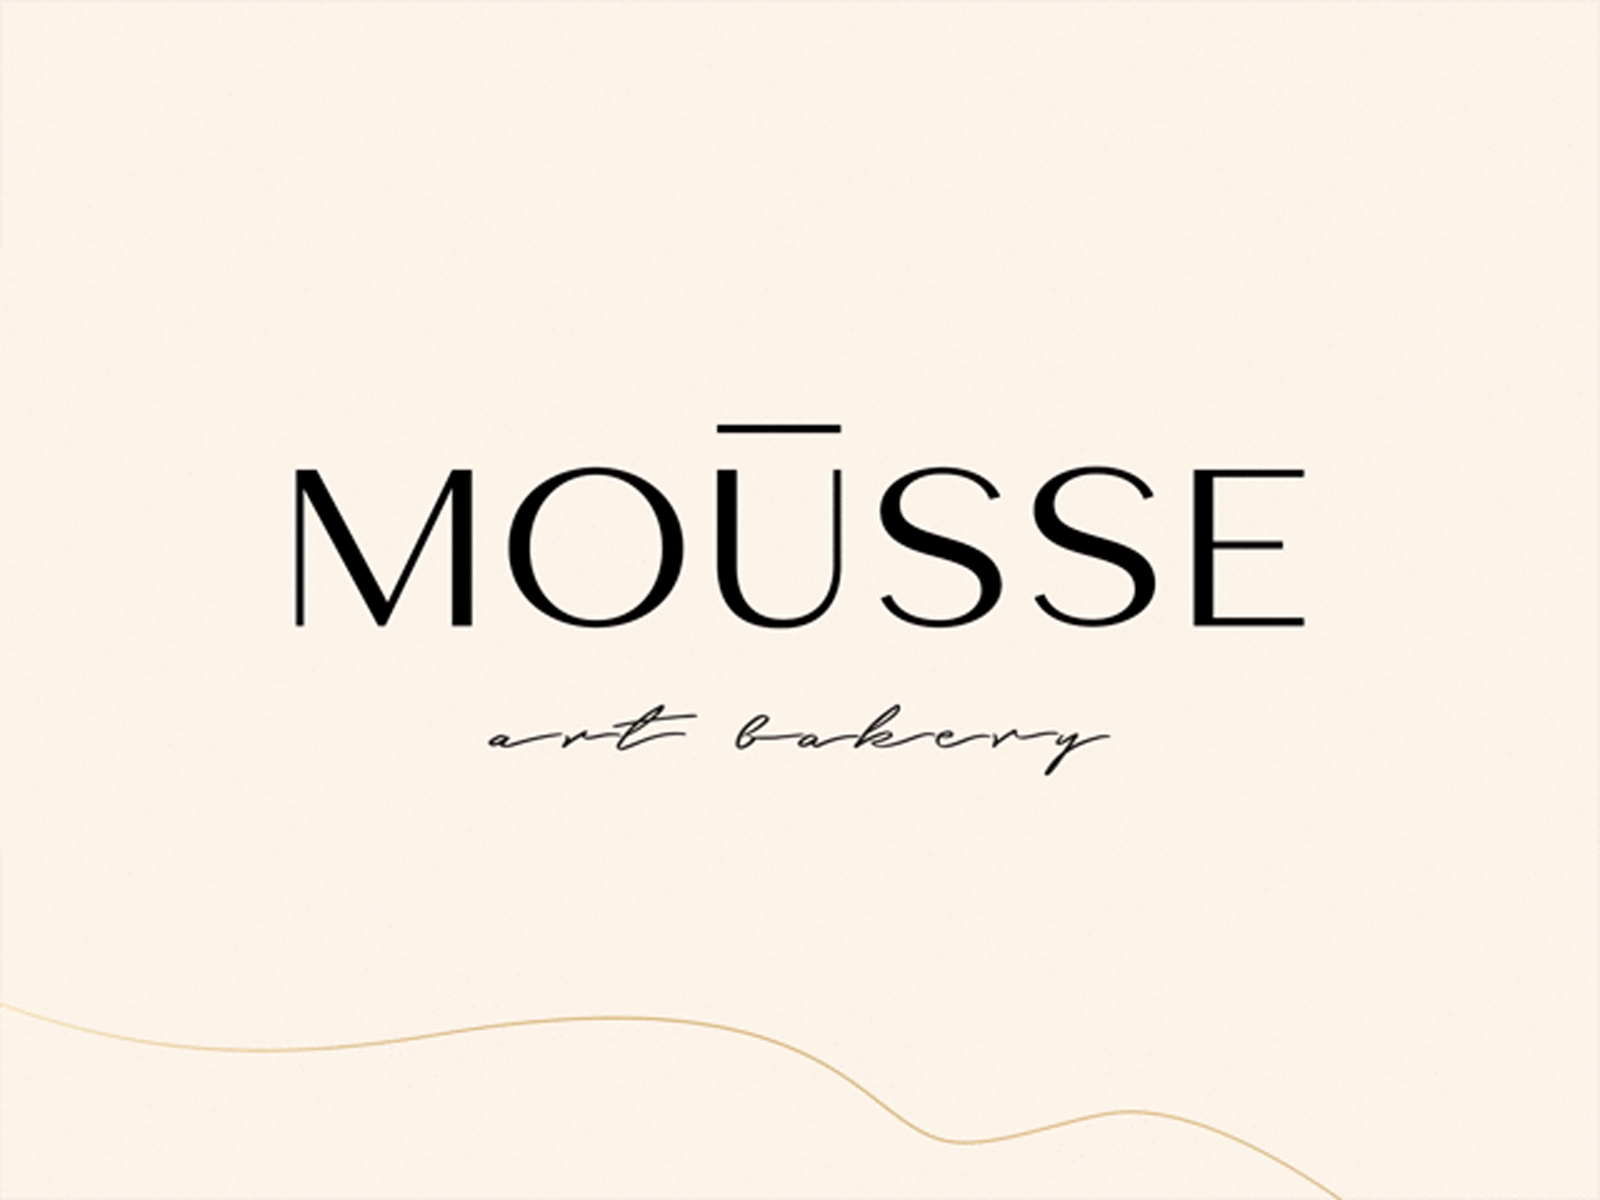 Mousse art bakery logo